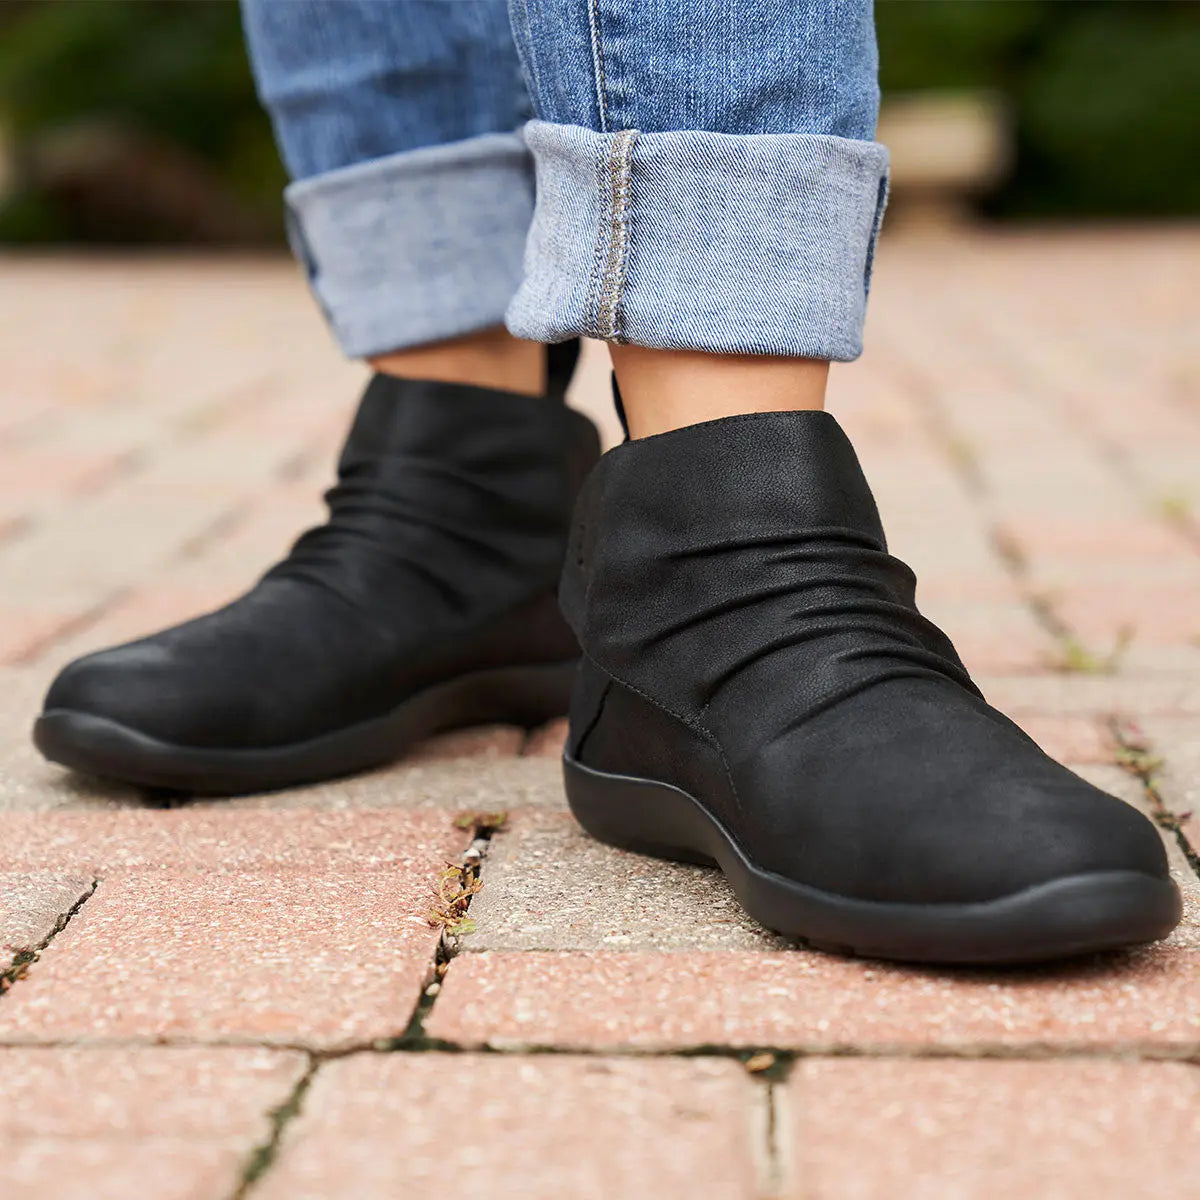 Women wearing Anodyne women's No.91 casual boot in black